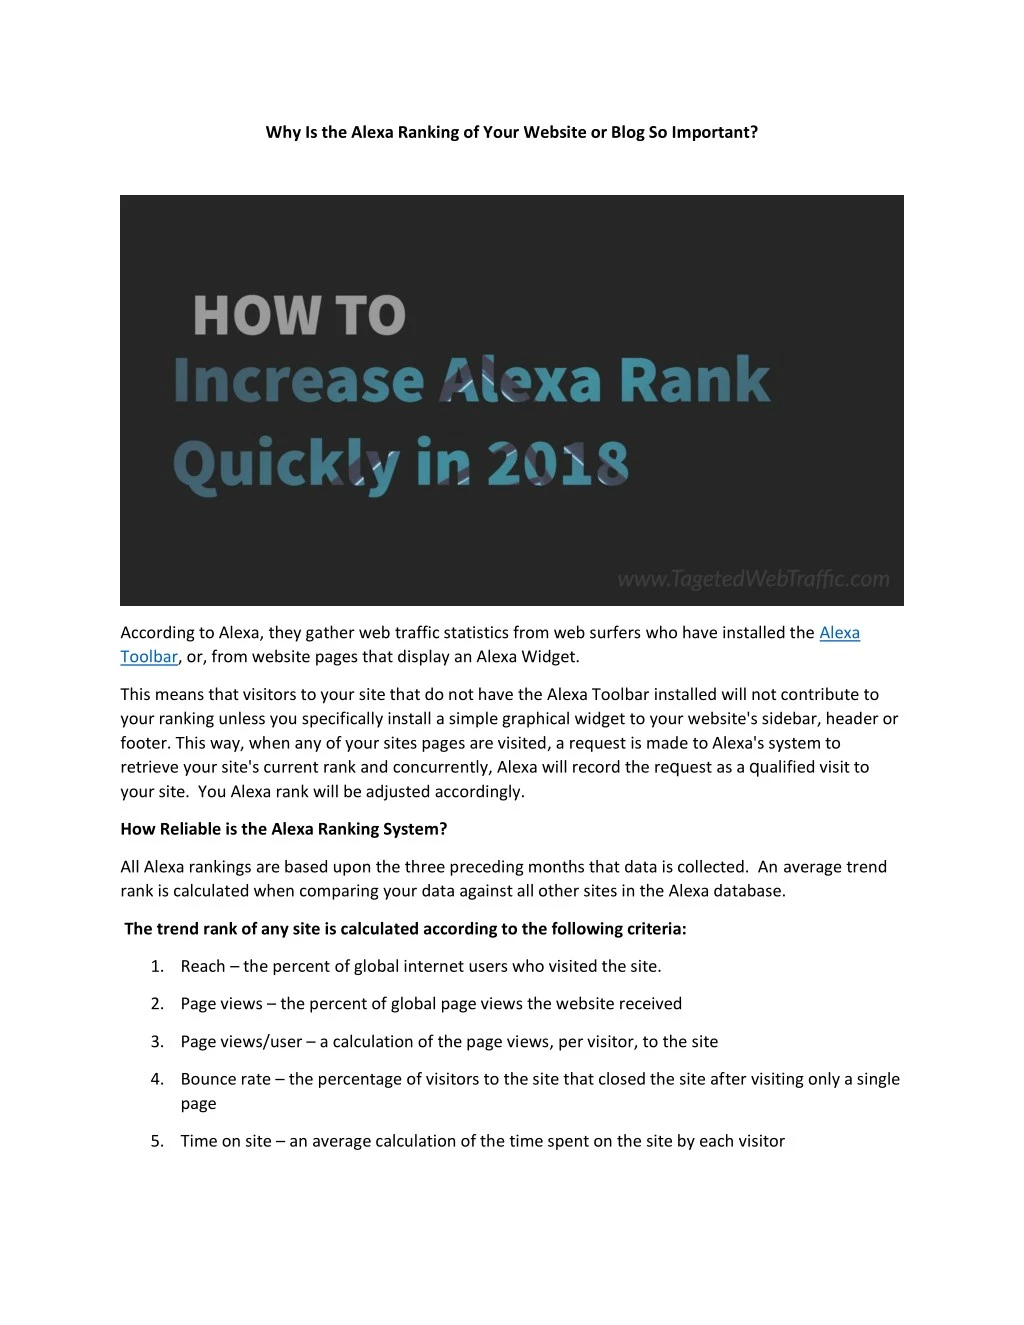 why i the al x ranking of y ur w b it r blog